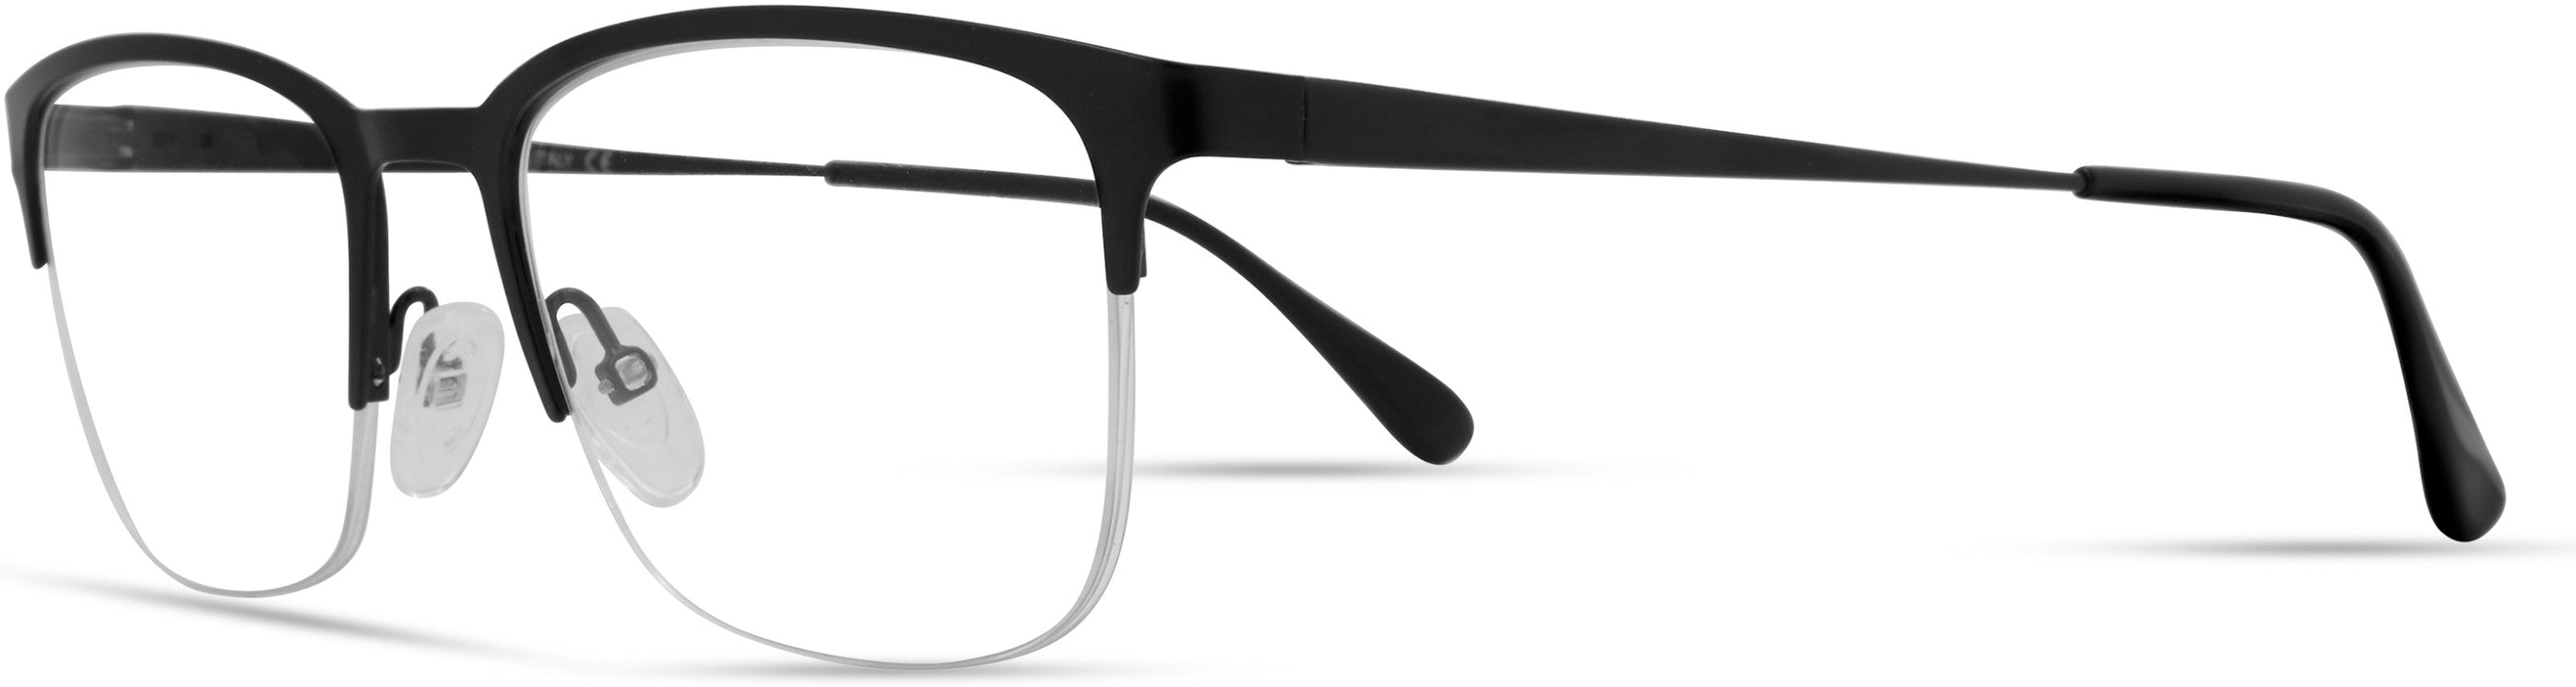  Elasta 7230 Rectangular Eyeglasses 0003-0003  Matte Black (00 Demo Lens)